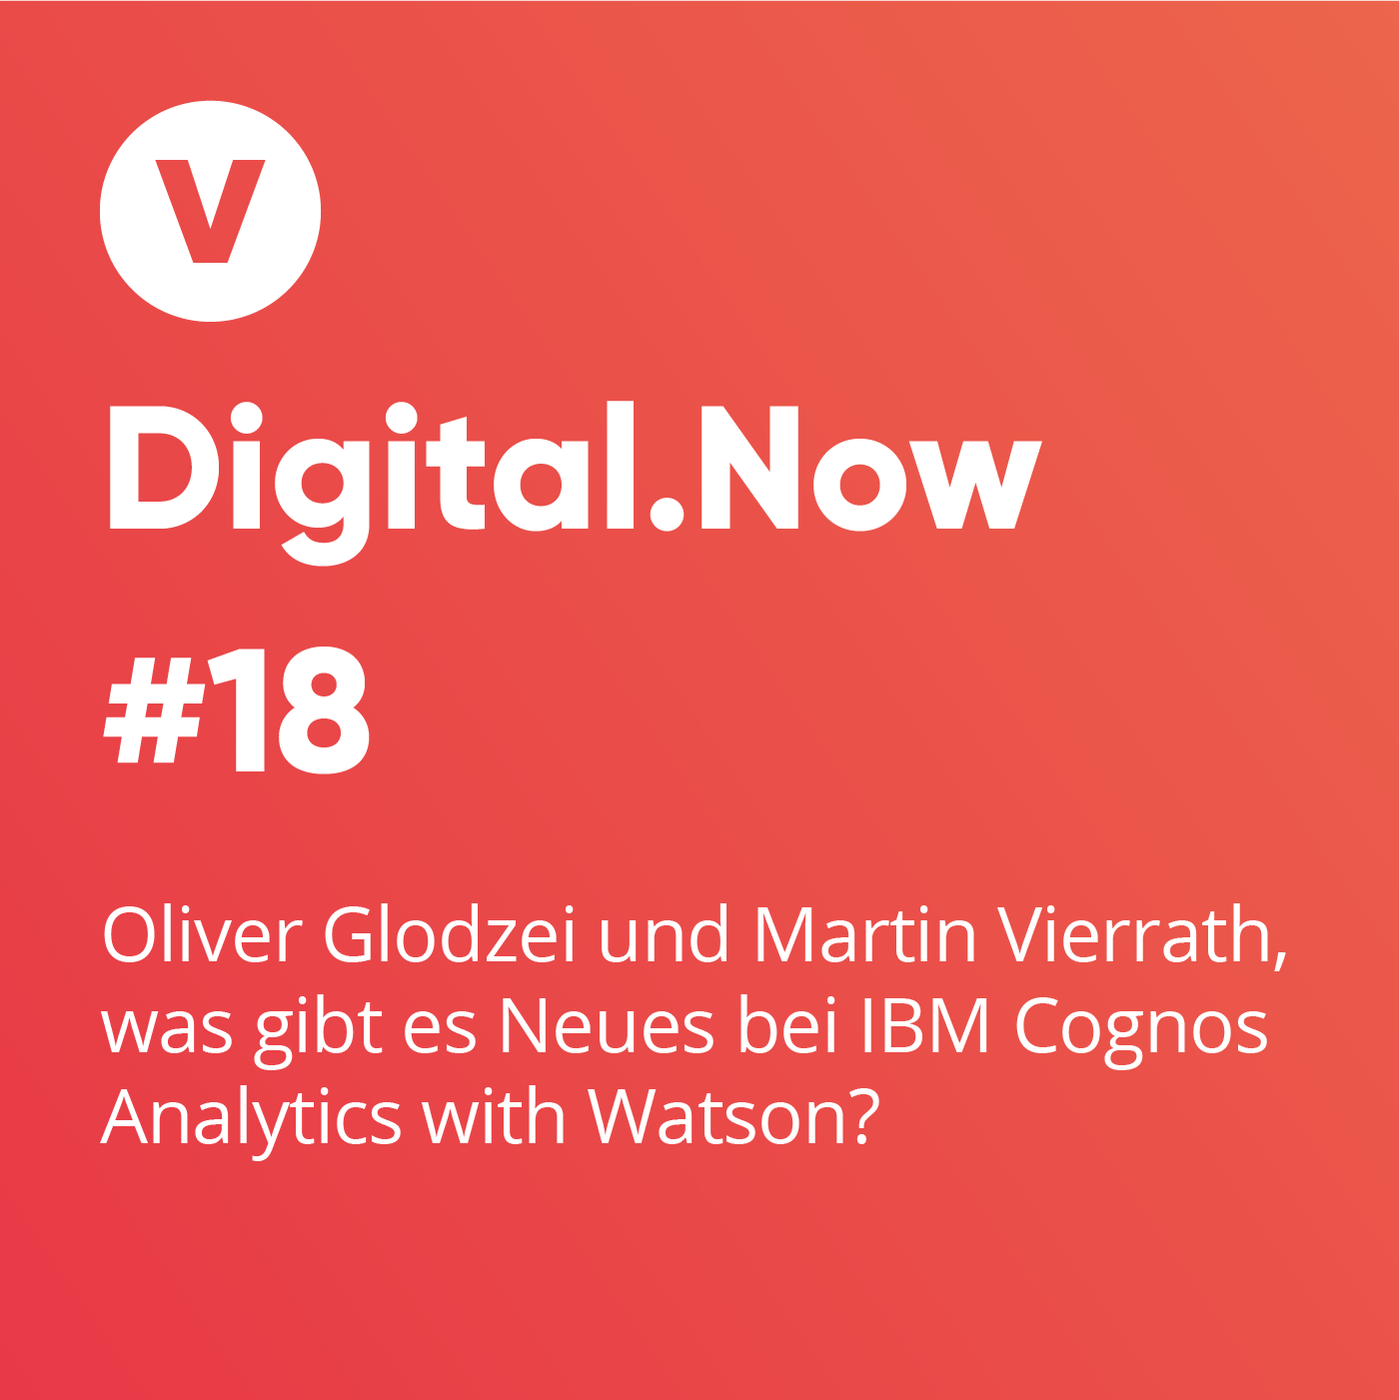 Oliver Glodzei und Martin Vierrath, was gibt es Neues bei IBM Cognos Analytics with Watson?